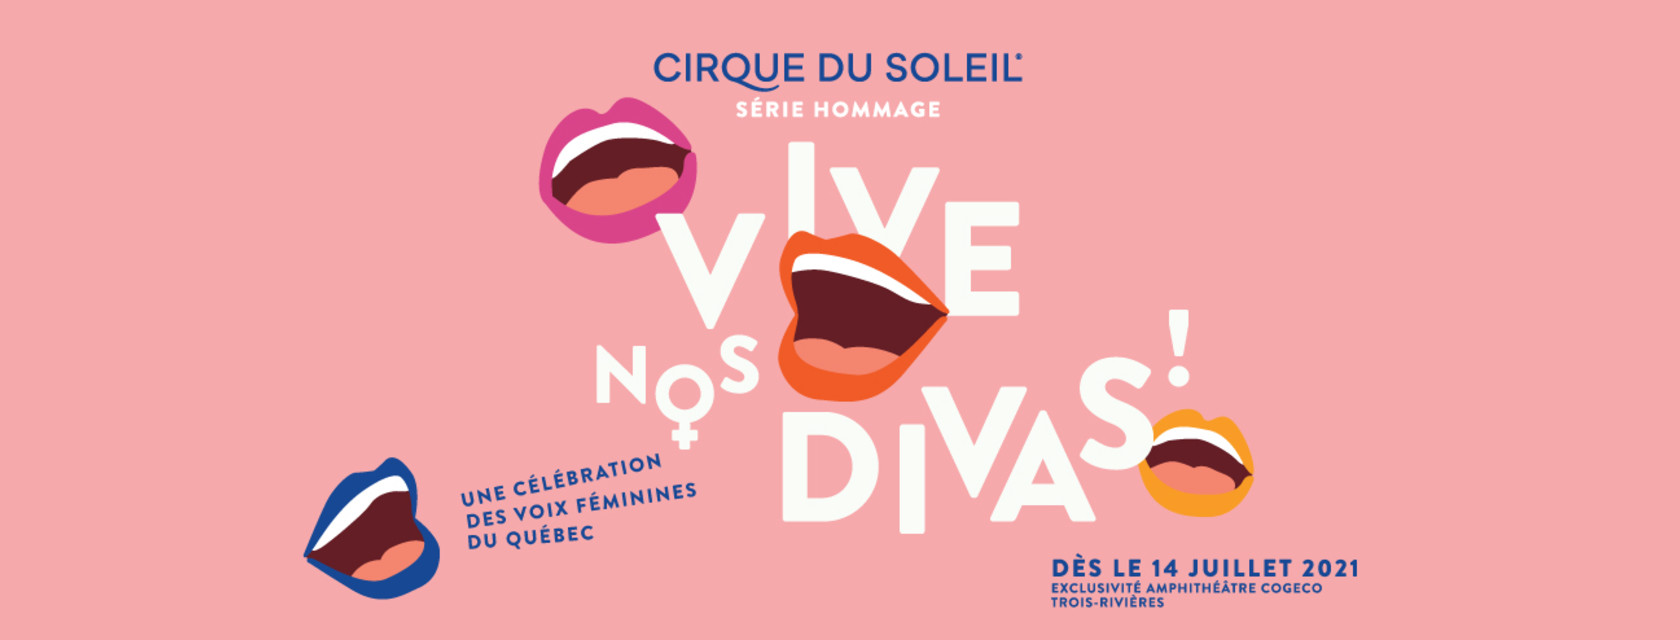  Cirque du Soleil - Hommage aux divas québécoises Postponement of the show to the 2021 season